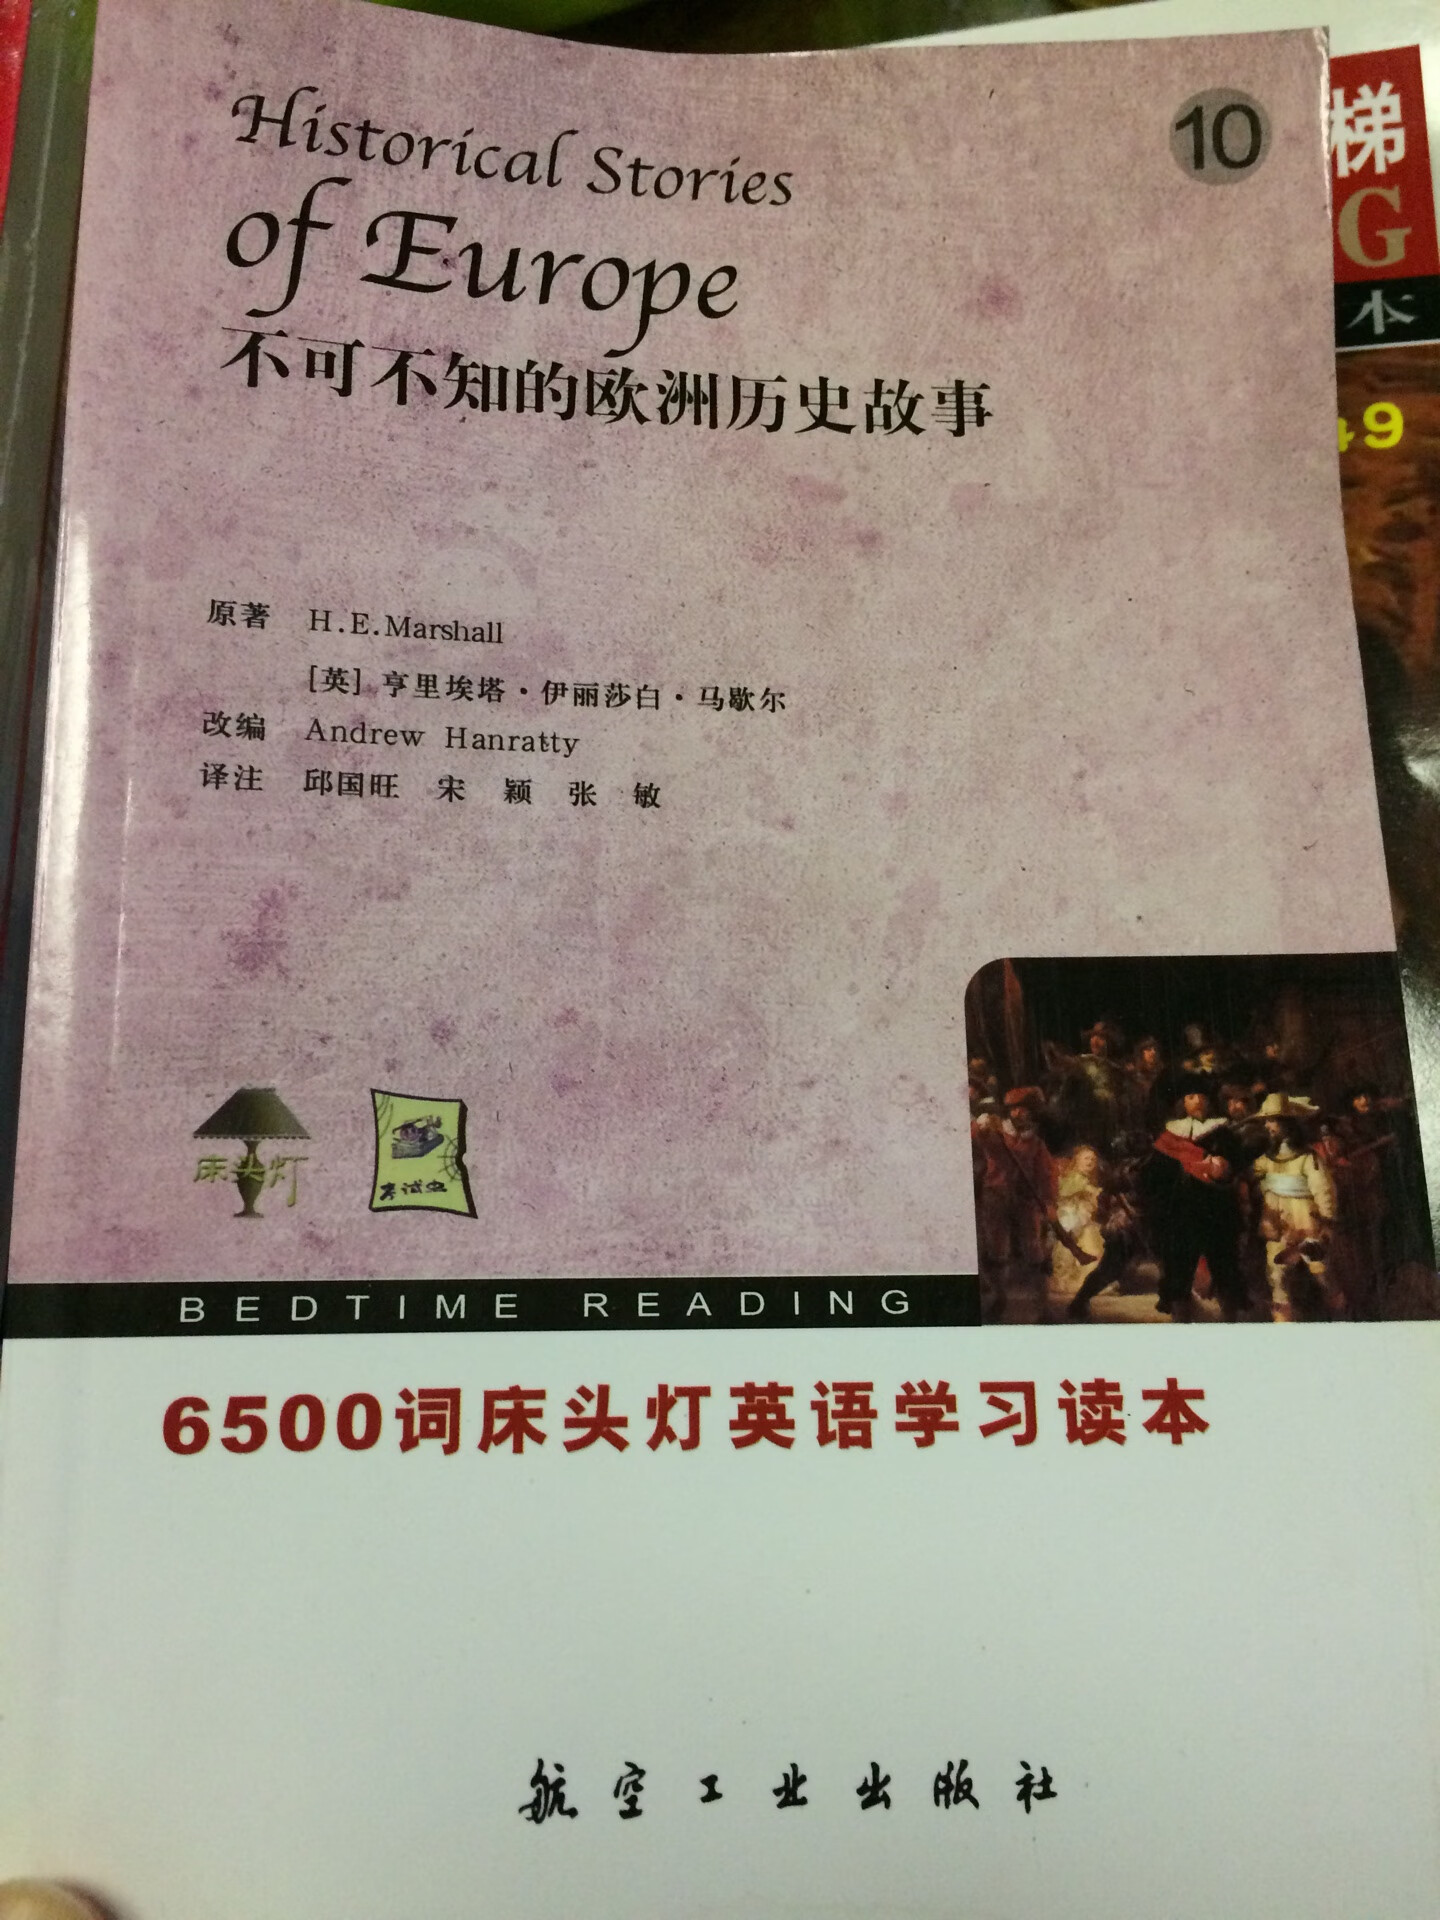 无塑封32开，新书，内容丰富，中英双语，值得推荐。